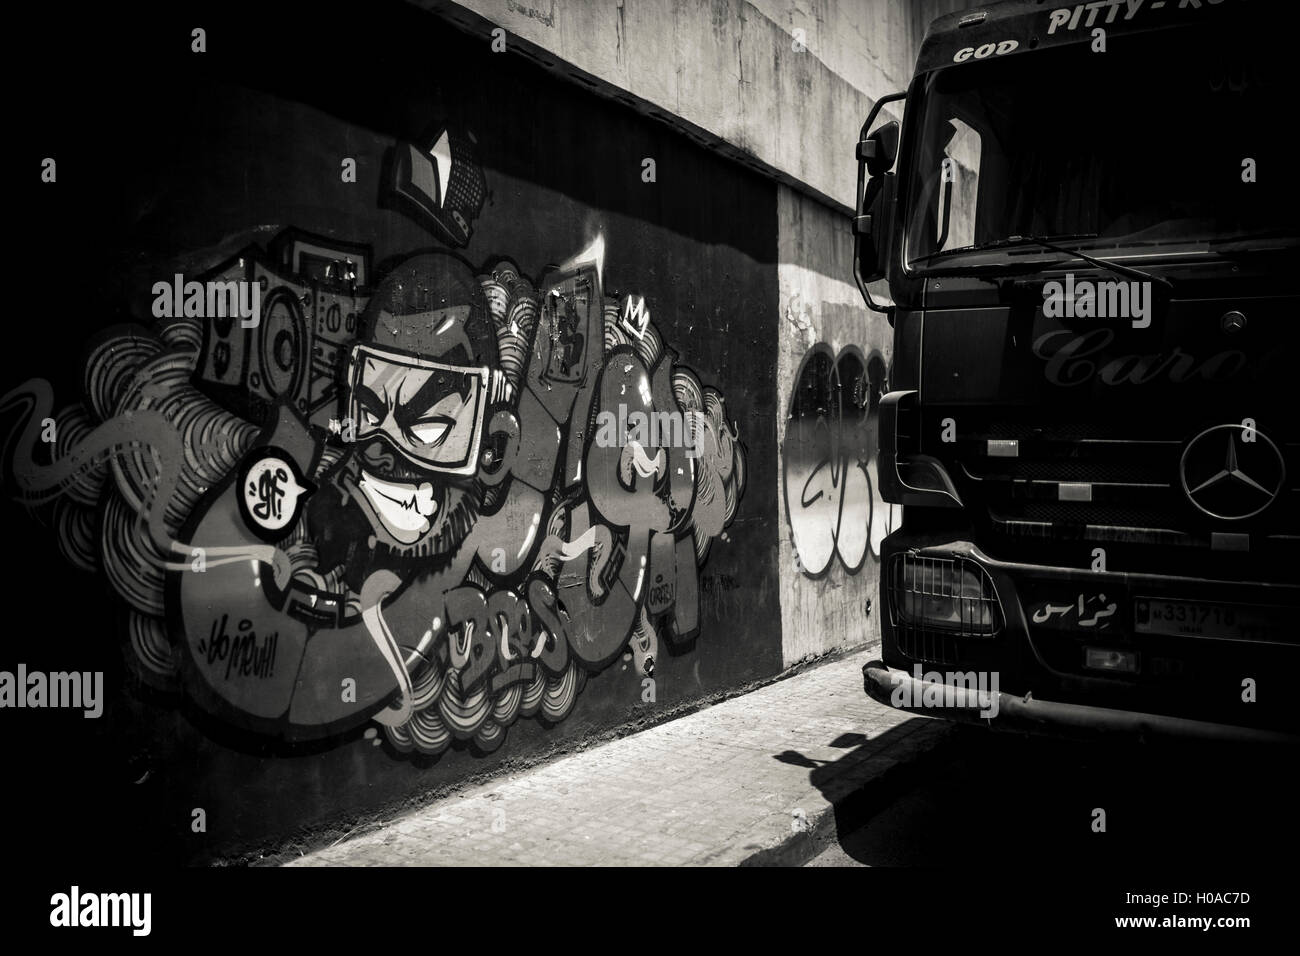 Les graffitis à Beyrouth - 10/06/2016 - Liban / Beyrouth - Geitawi, Beyrouth, juin 2016. Graffiti par Wyte. (Sur le mur en hommage à meuh.) - Bilal Tarabey / Le Pictorium Banque D'Images